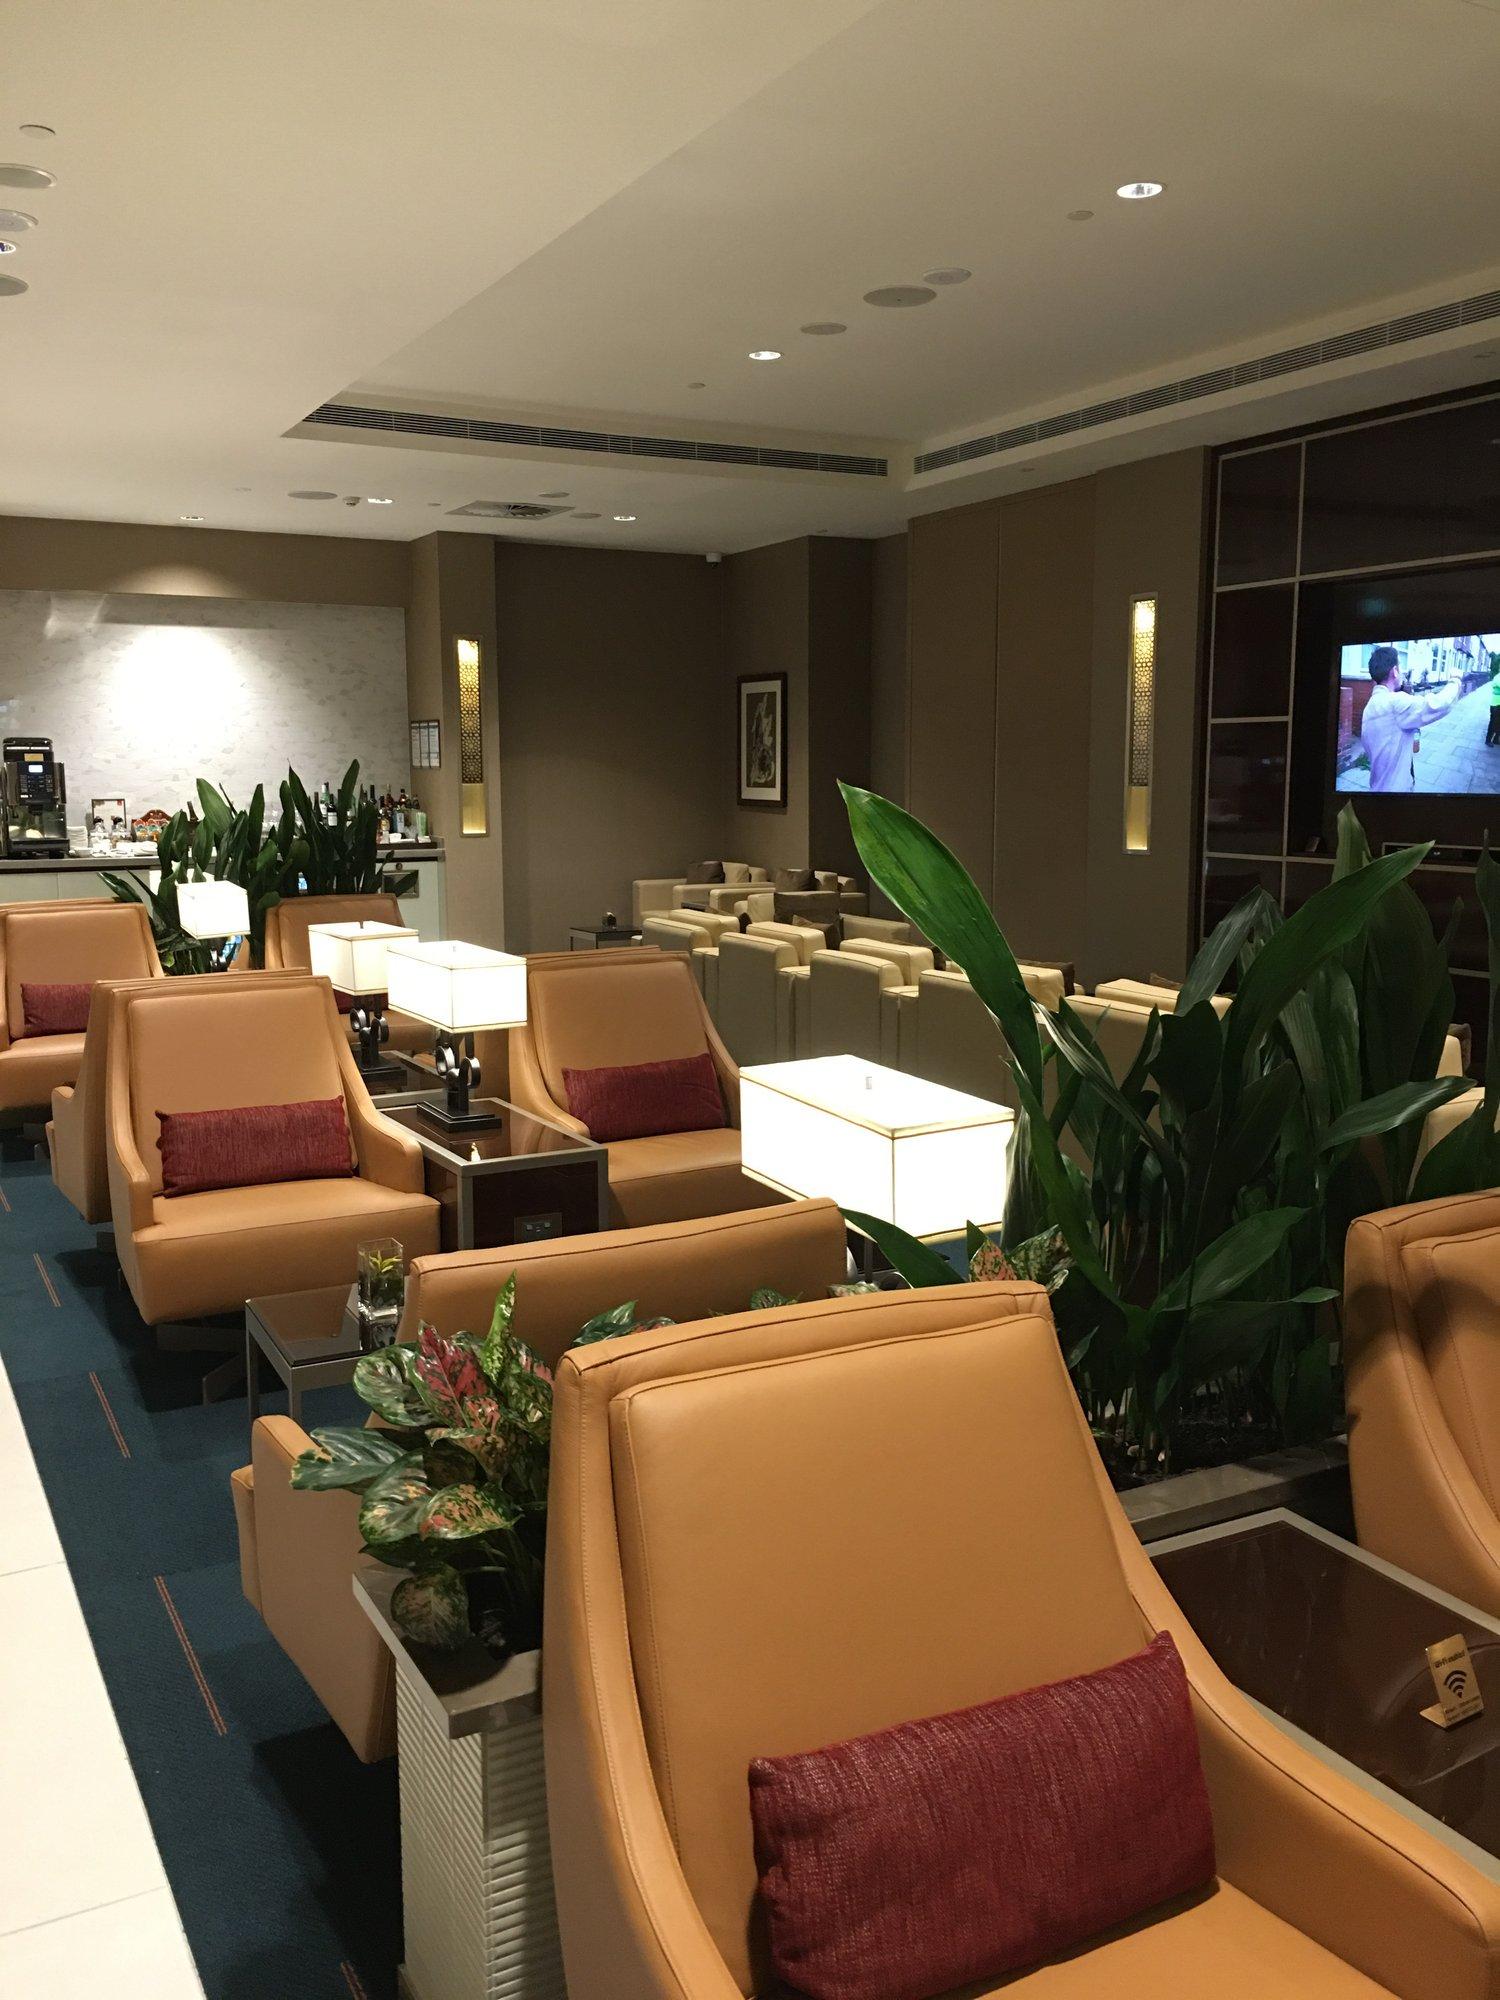 The Emirates Lounge image 3 of 8